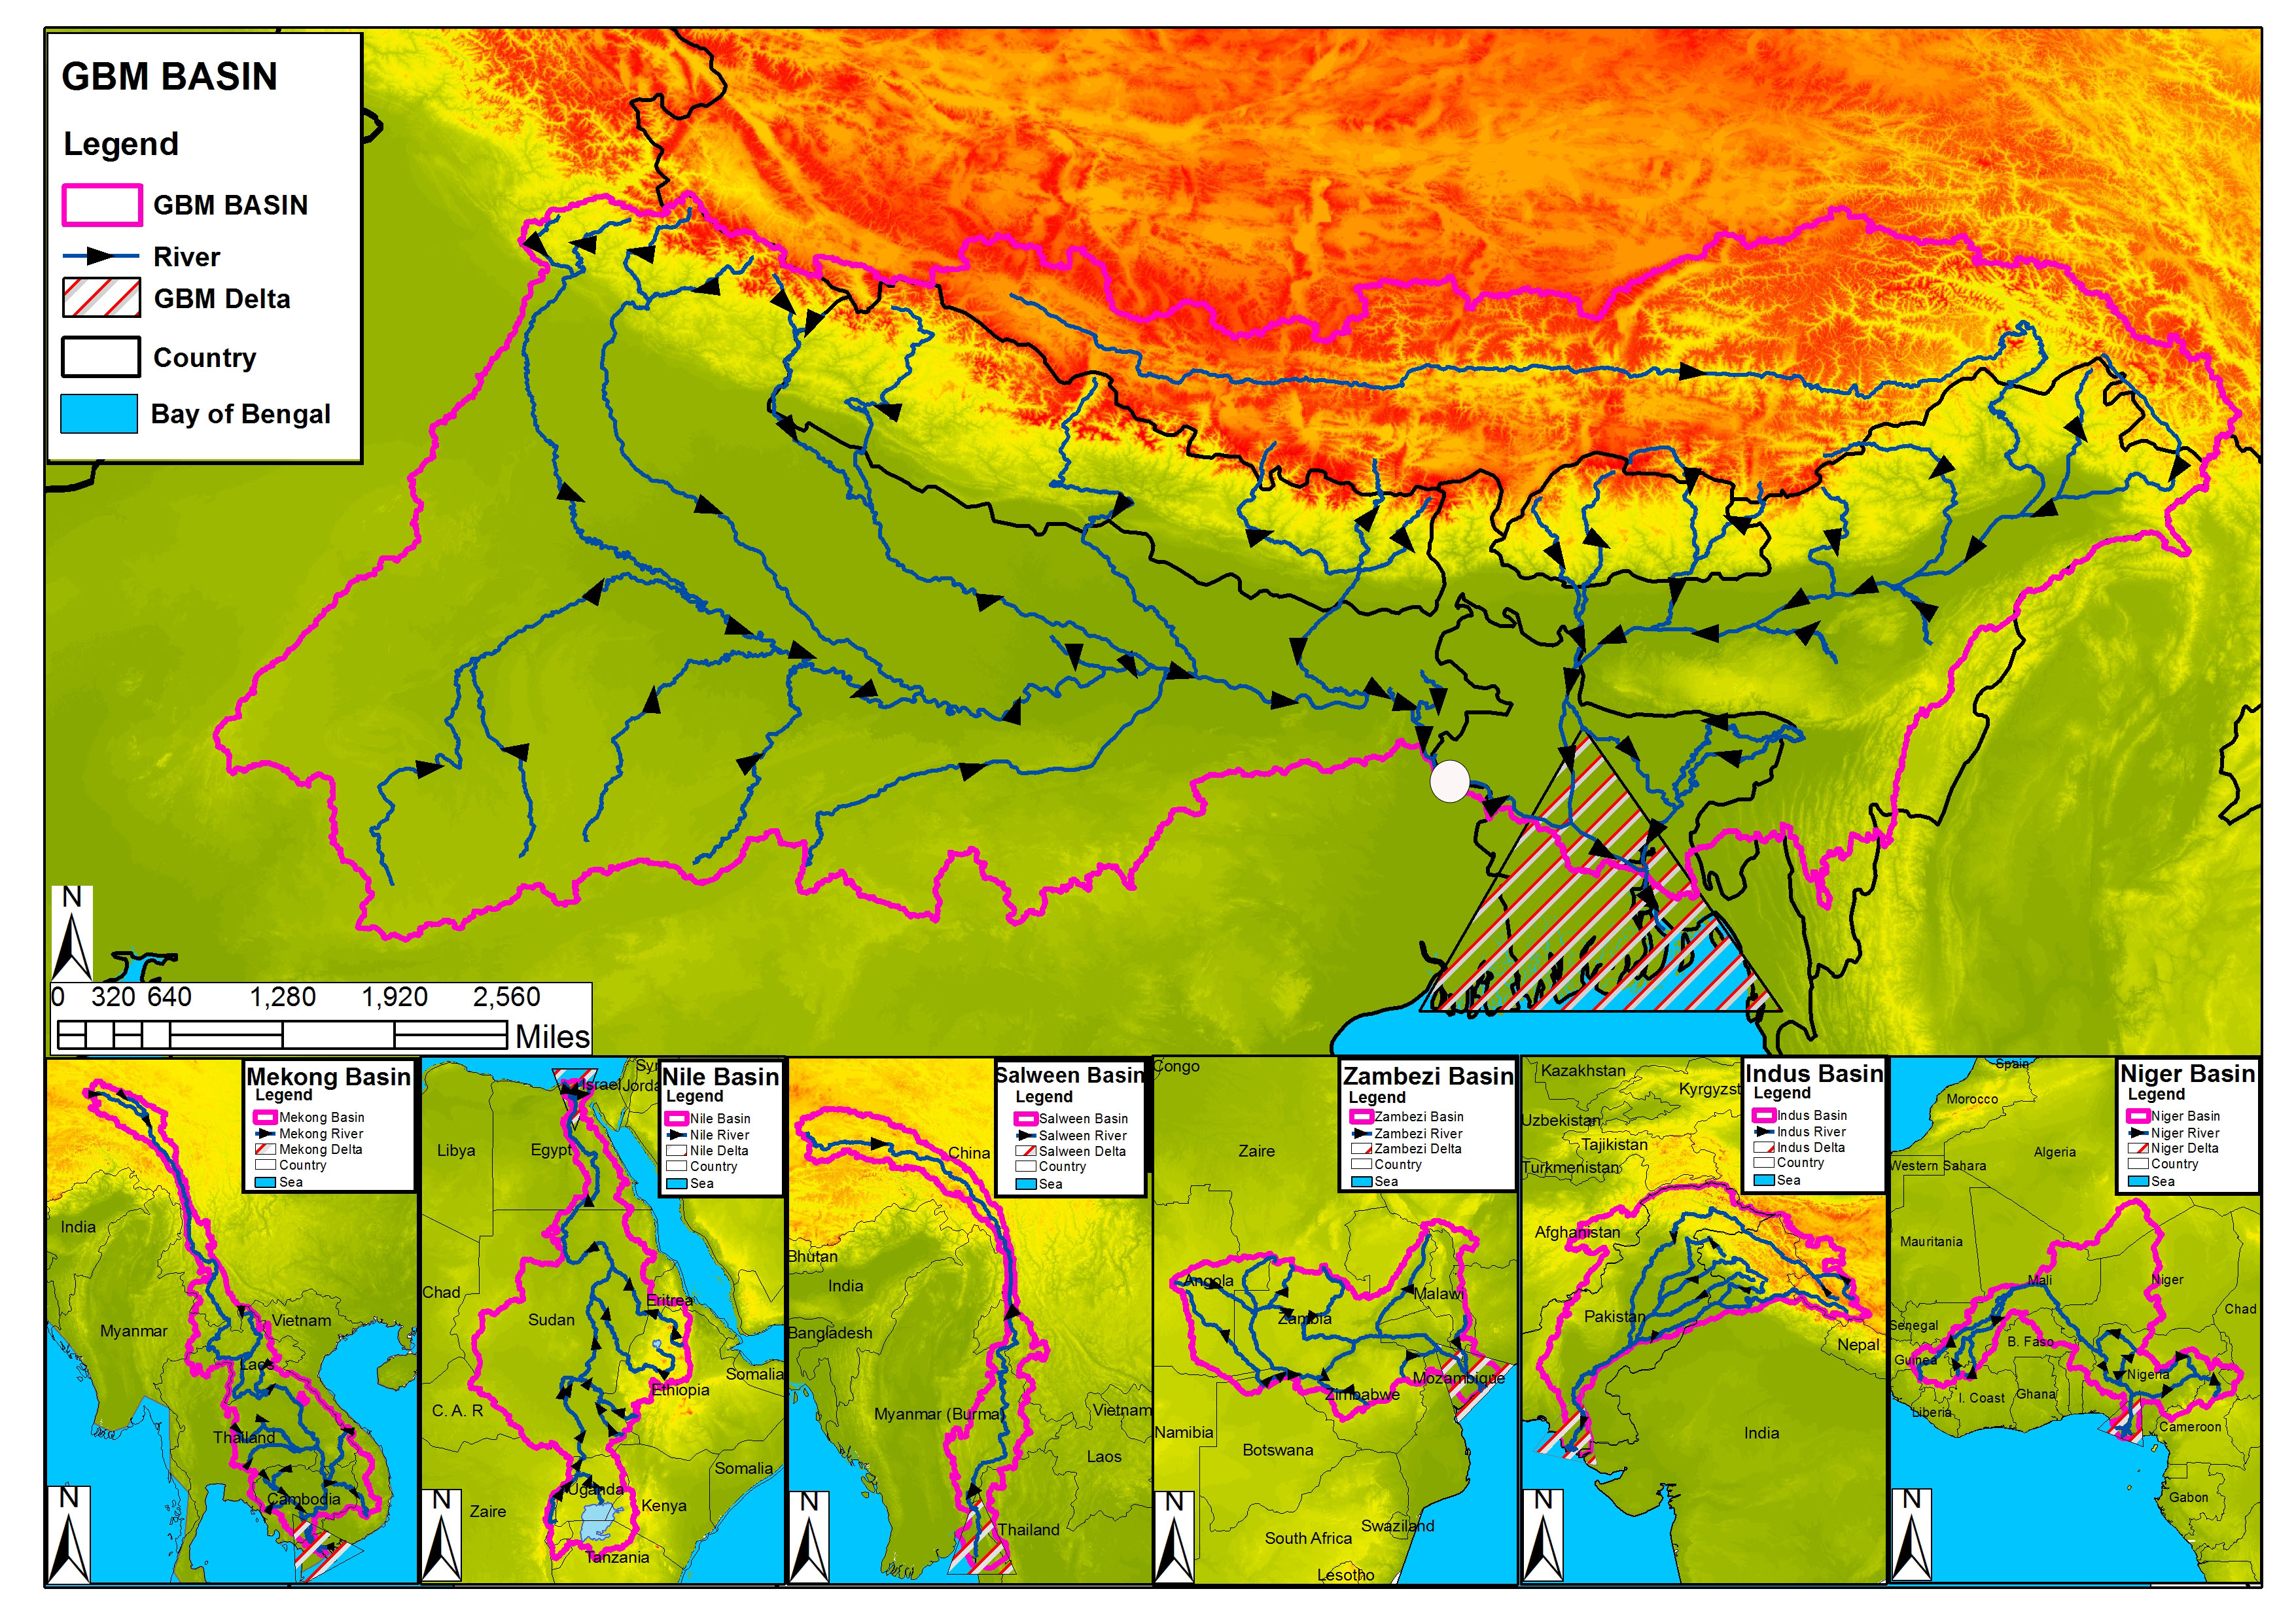 بنغلادش تُعلن عن البدء باستخدام نظام سيرفير للإنذار والتنبؤ بالطقس